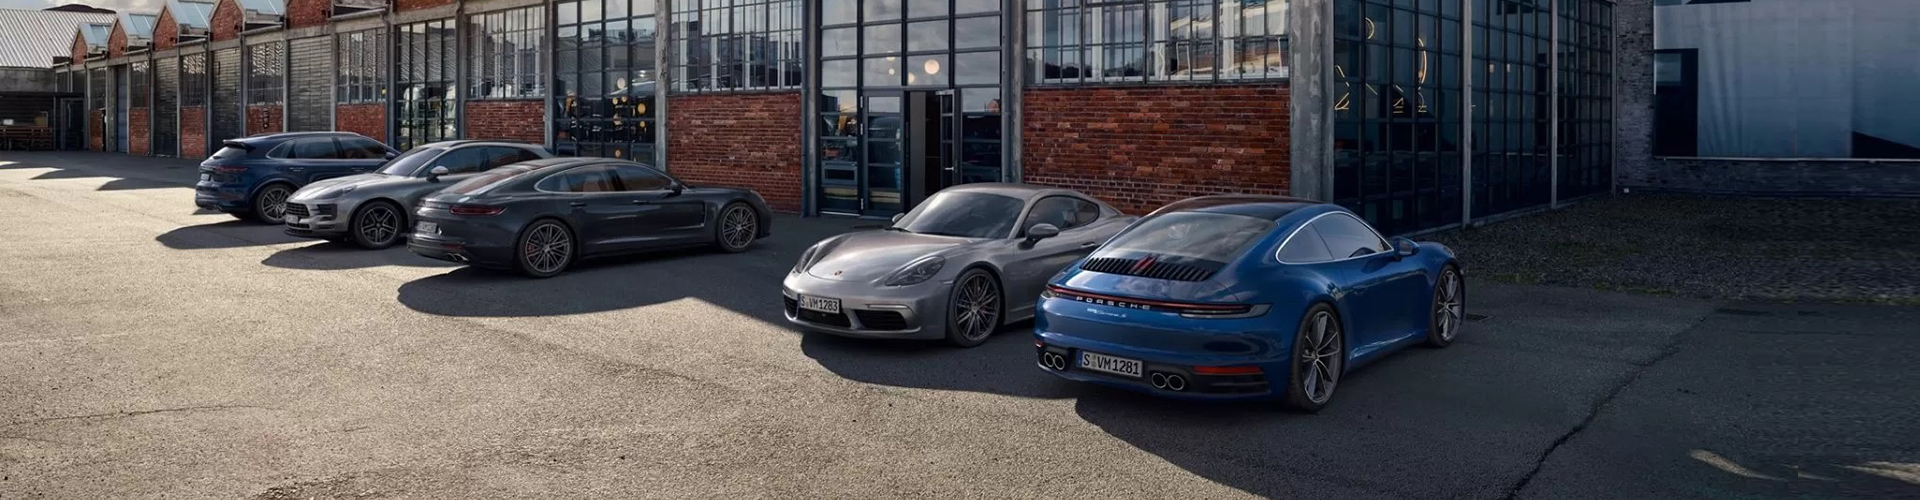 Übersicht Porsche Modelle